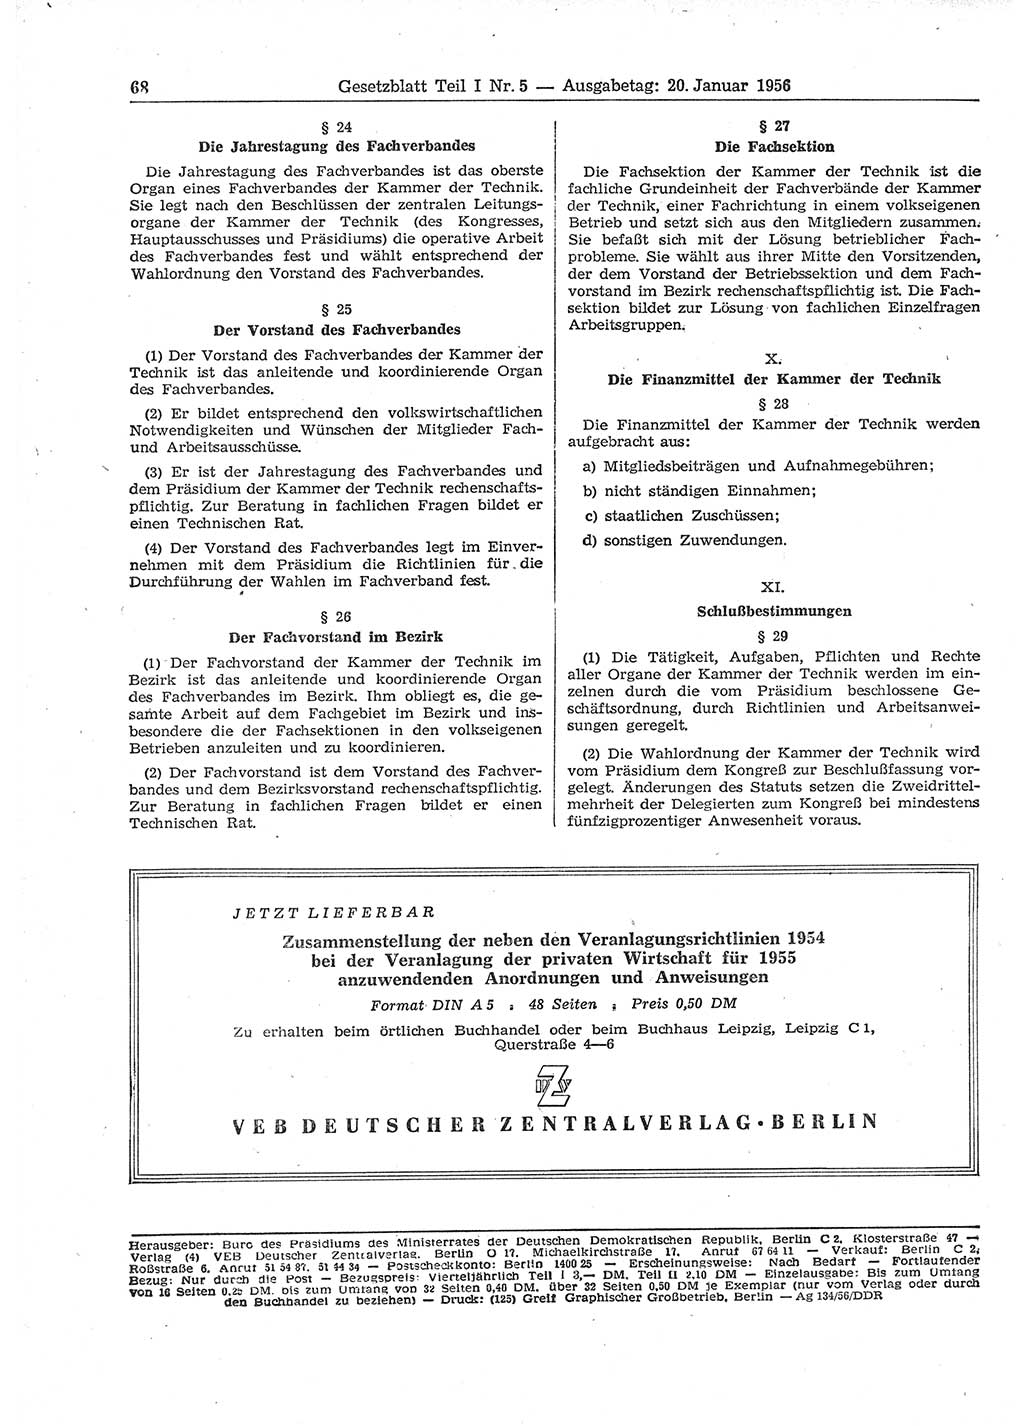 Gesetzblatt (GBl.) der Deutschen Demokratischen Republik (DDR) Teil Ⅰ 1956, Seite 68 (GBl. DDR Ⅰ 1956, S. 68)